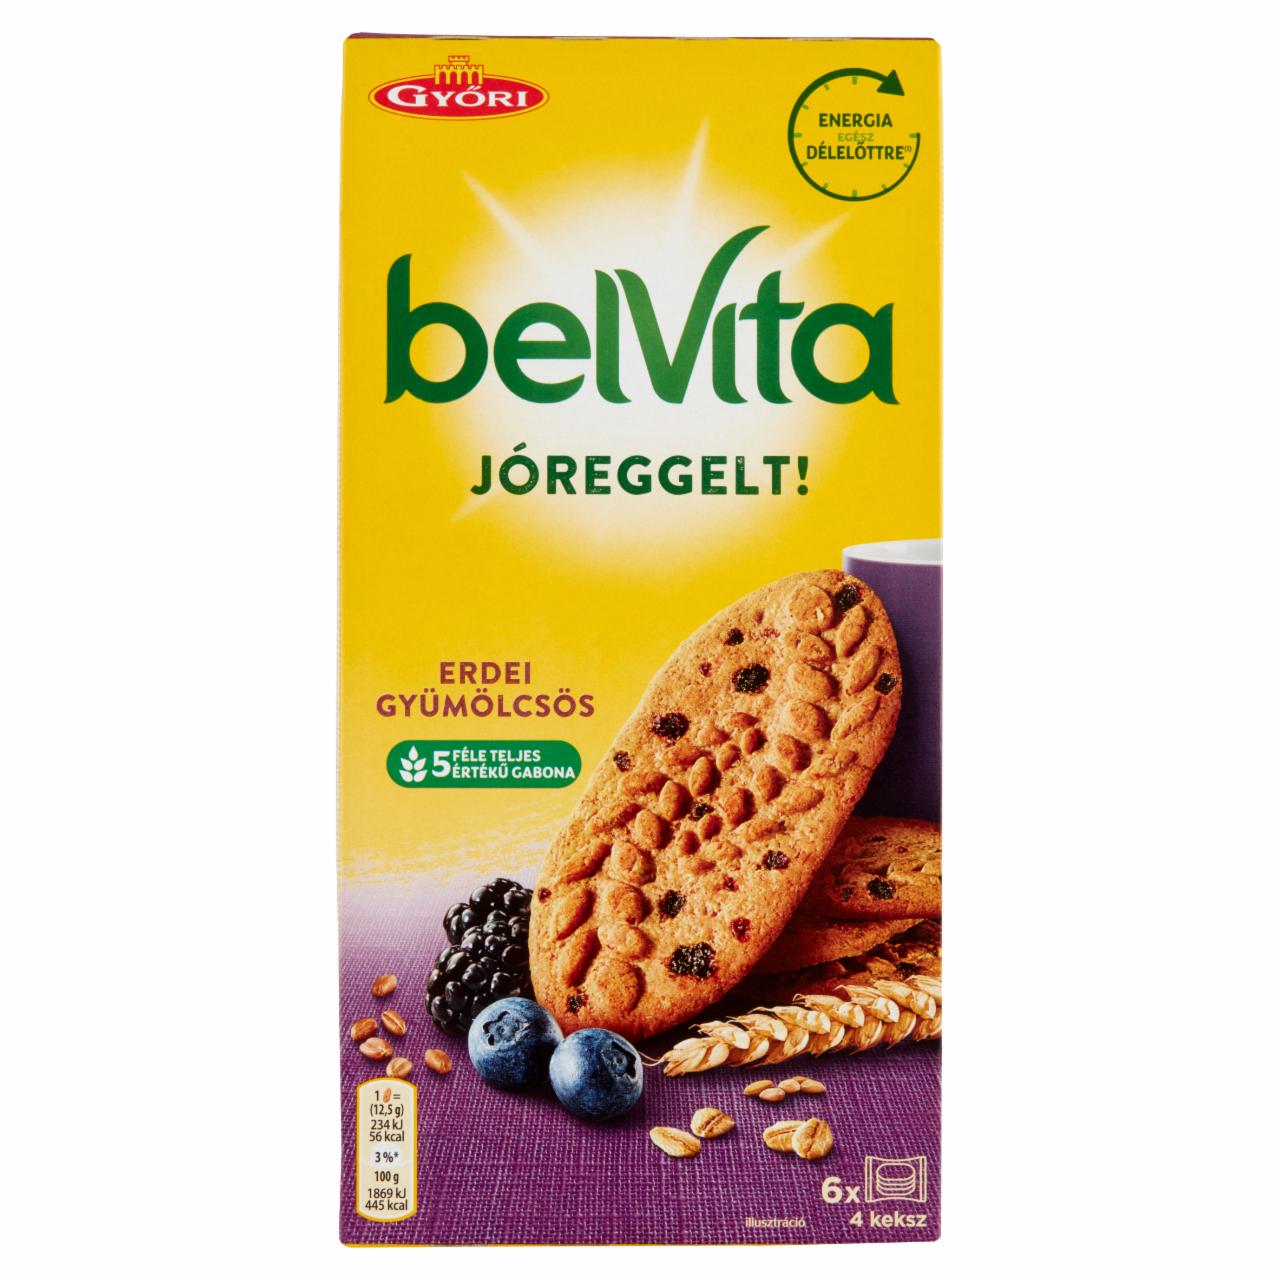 Képek - Belvita JóReggelt! erdei gyümölcsös, gabonás, omlós keksz 300 g